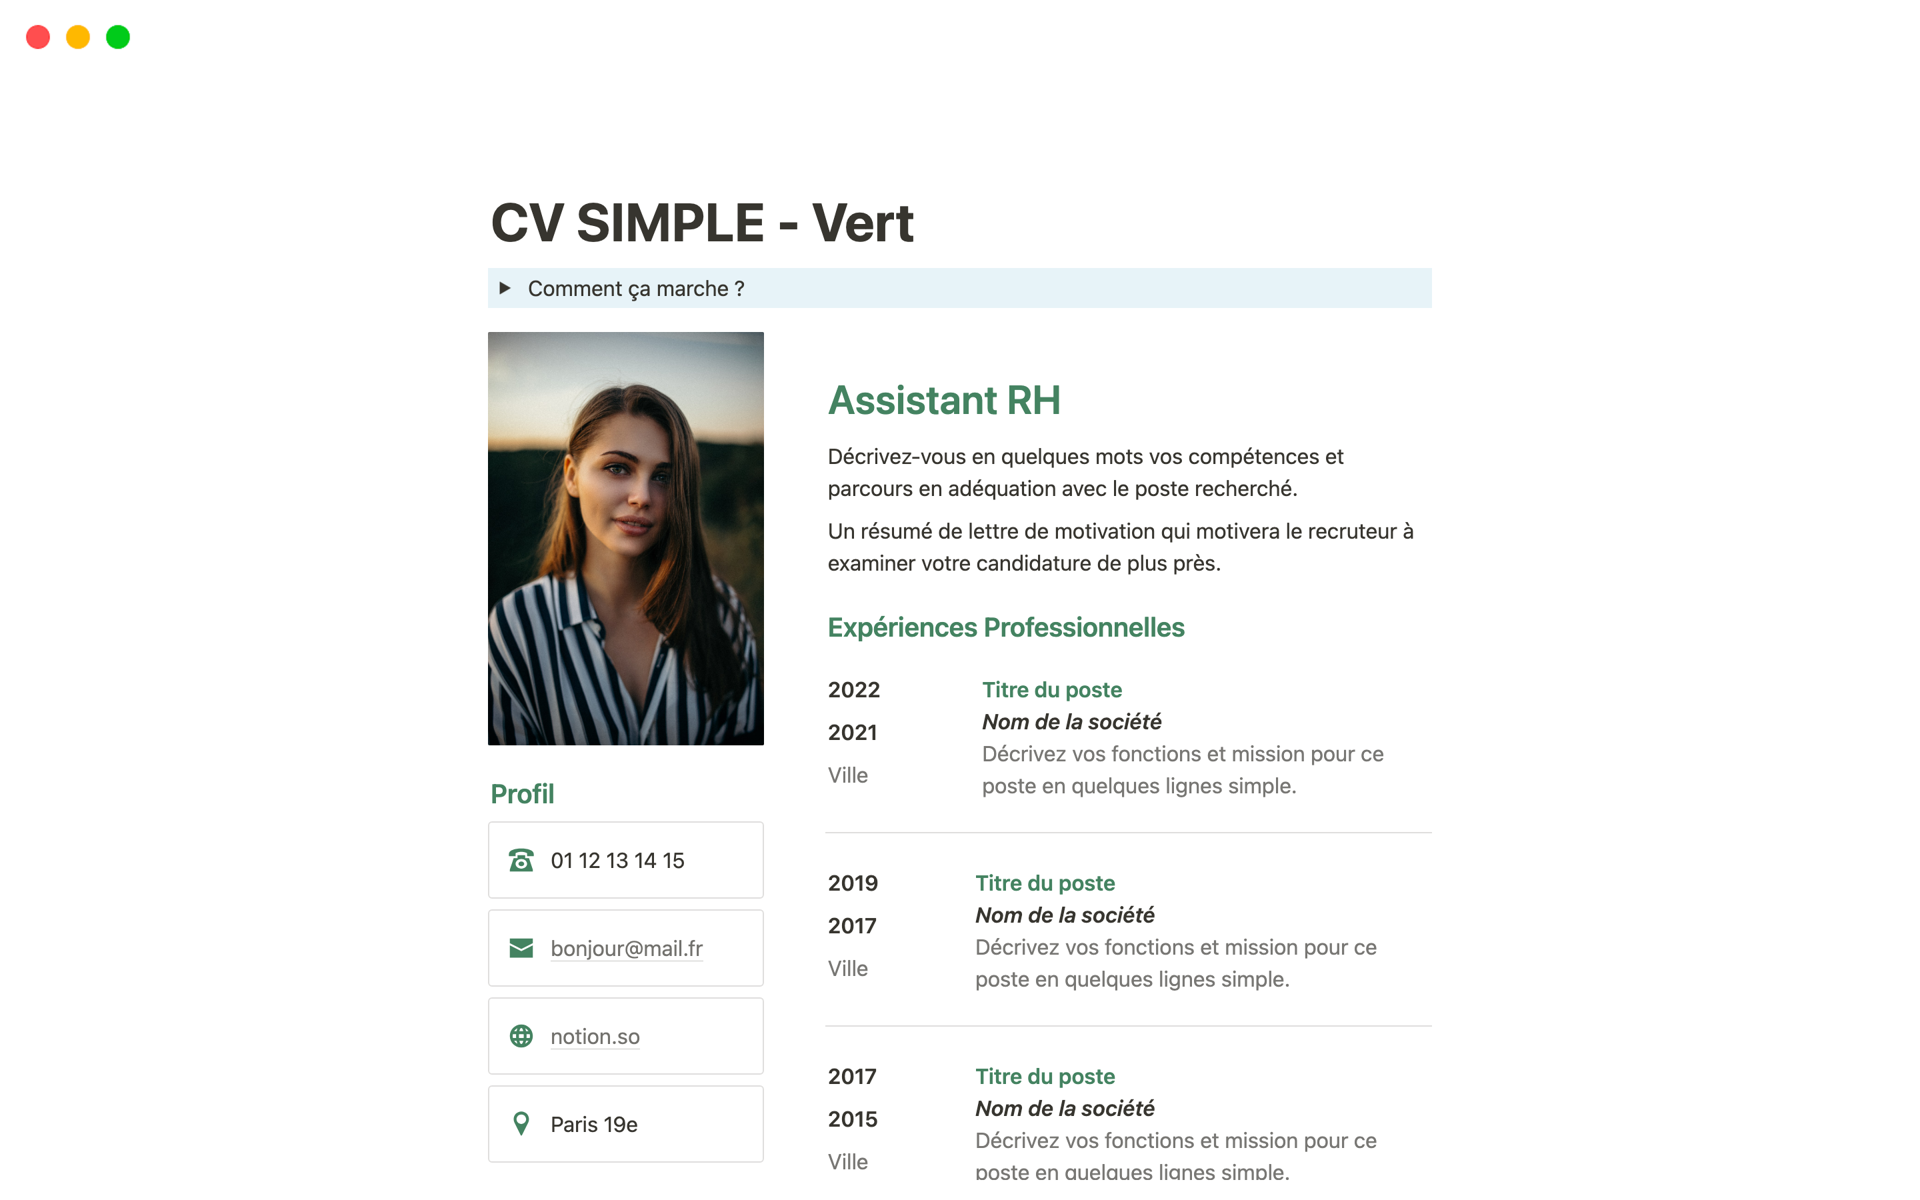 Uma prévia do modelo para CV simple vert en Français